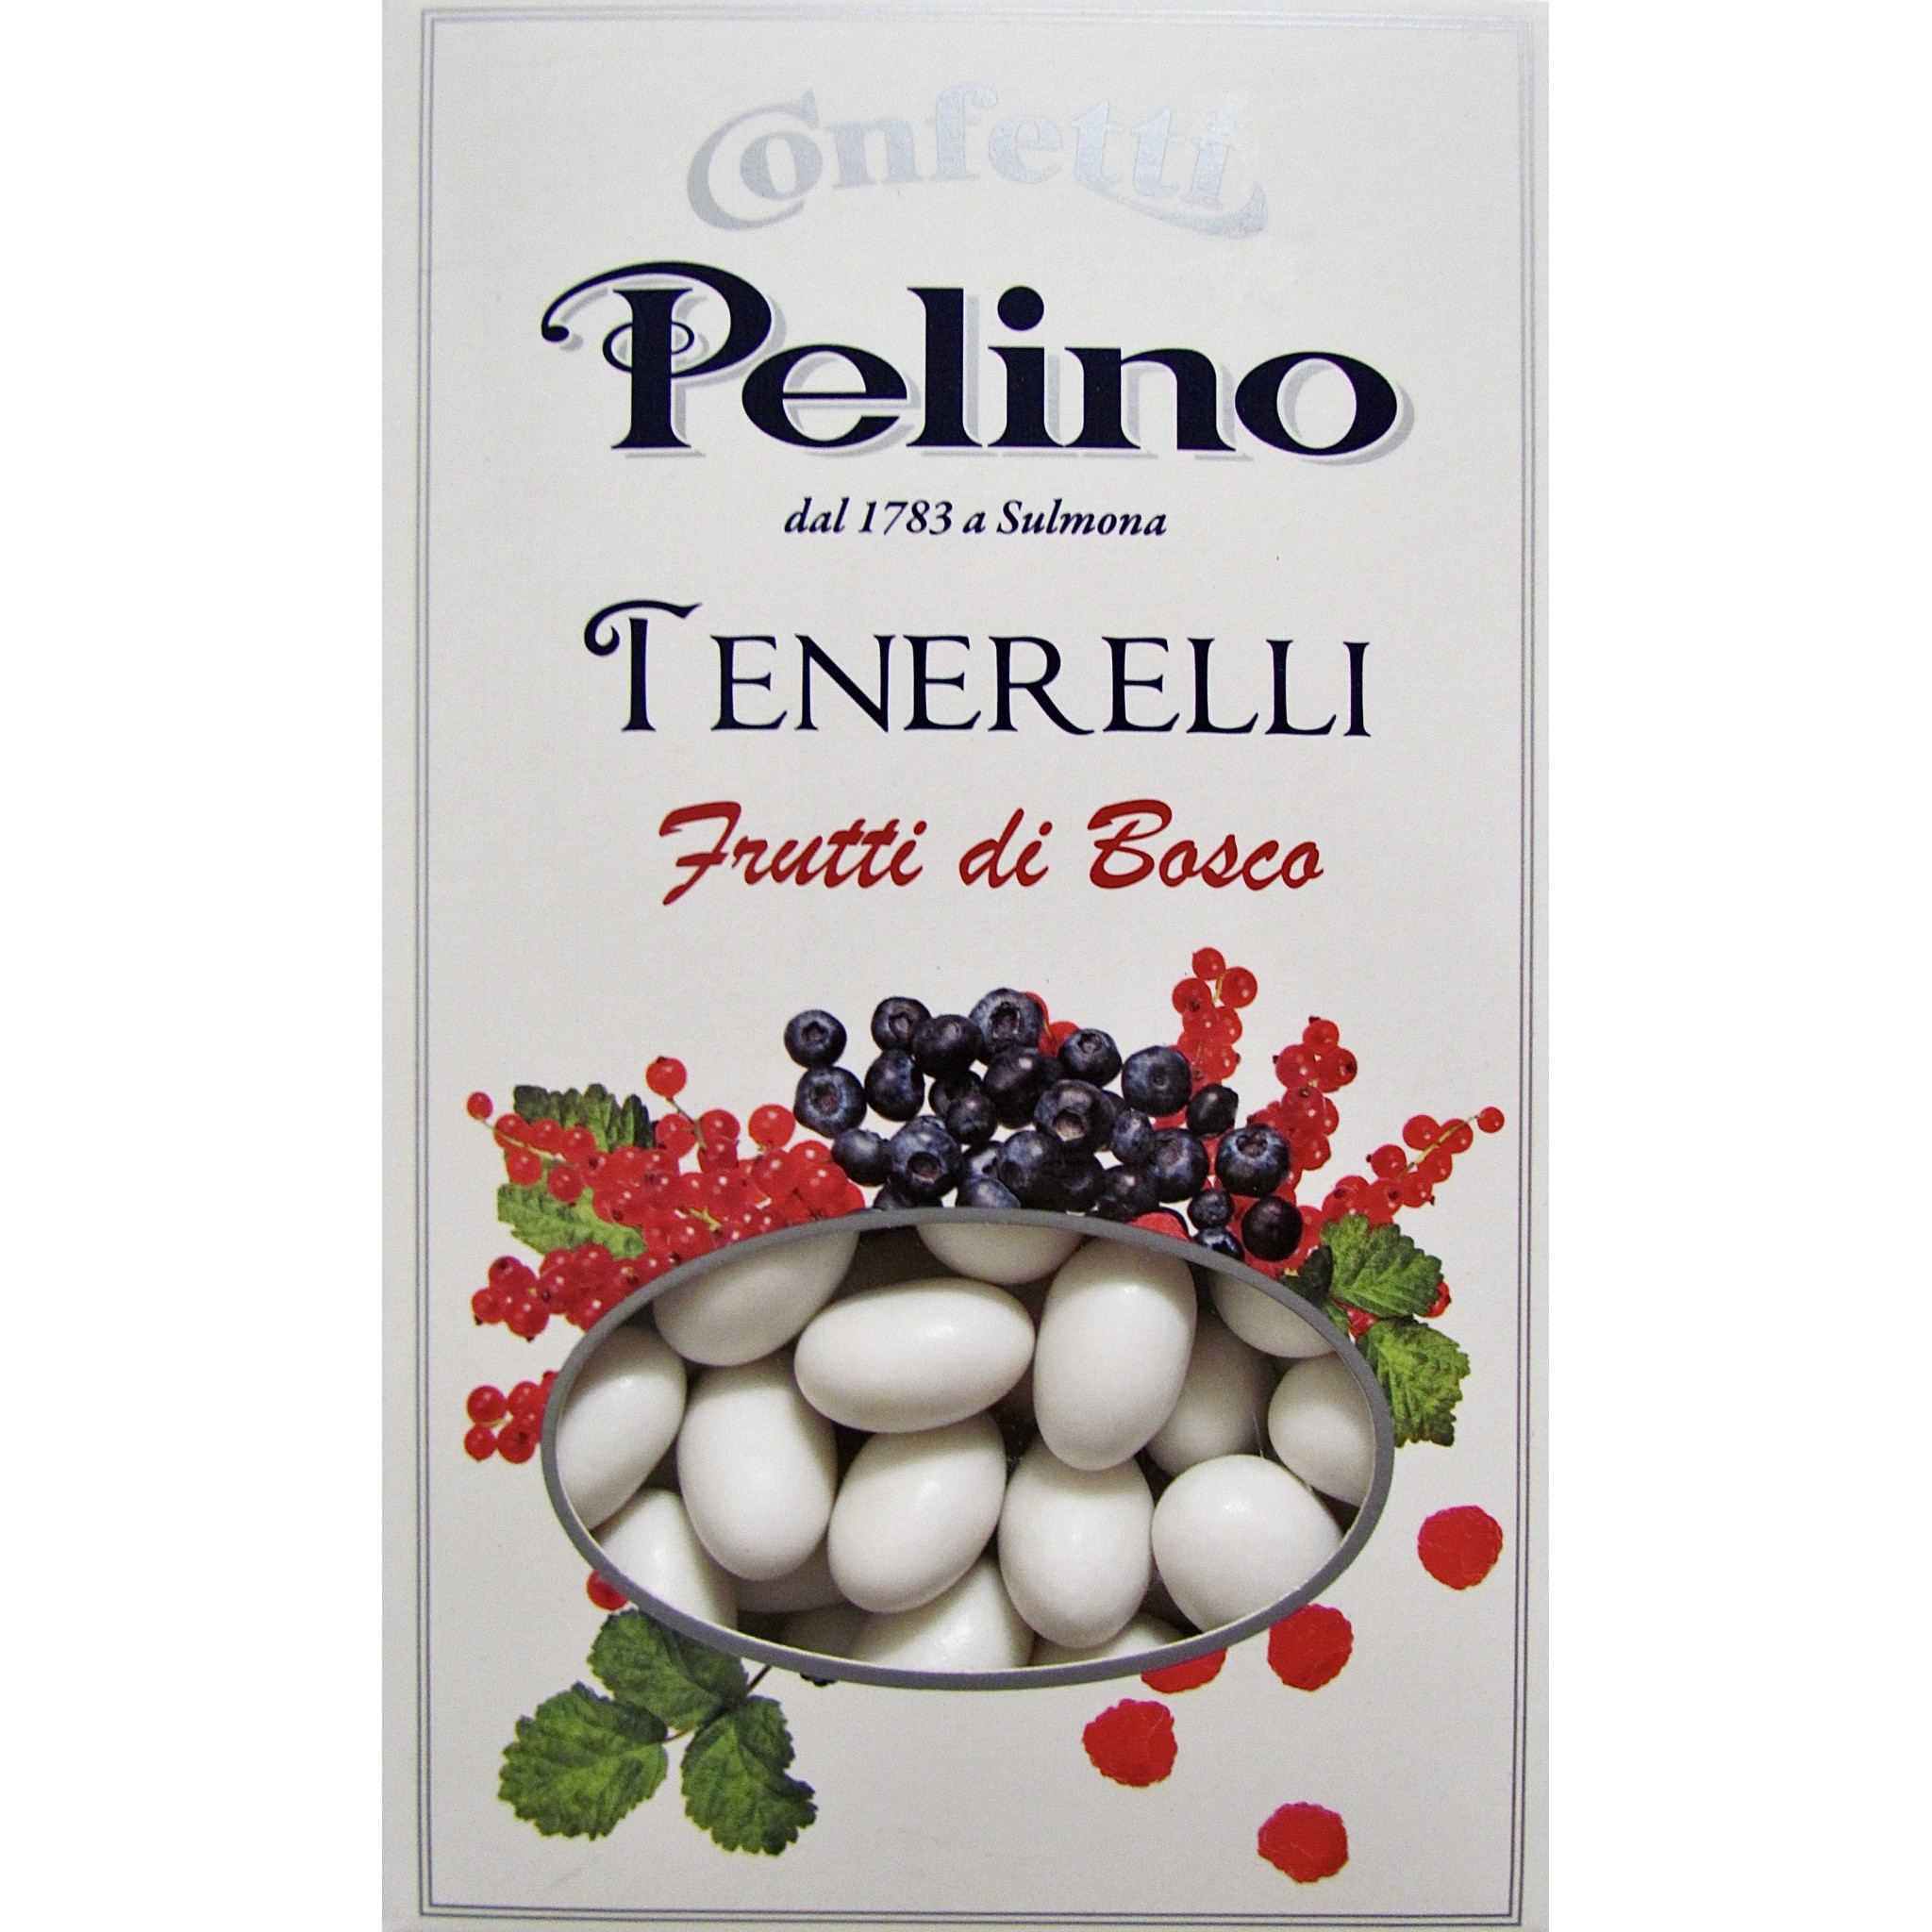 https://www.corso101.com/58321-thickbox_default/pelino-tenerelli-frutti-di-bosco-300g.jpg